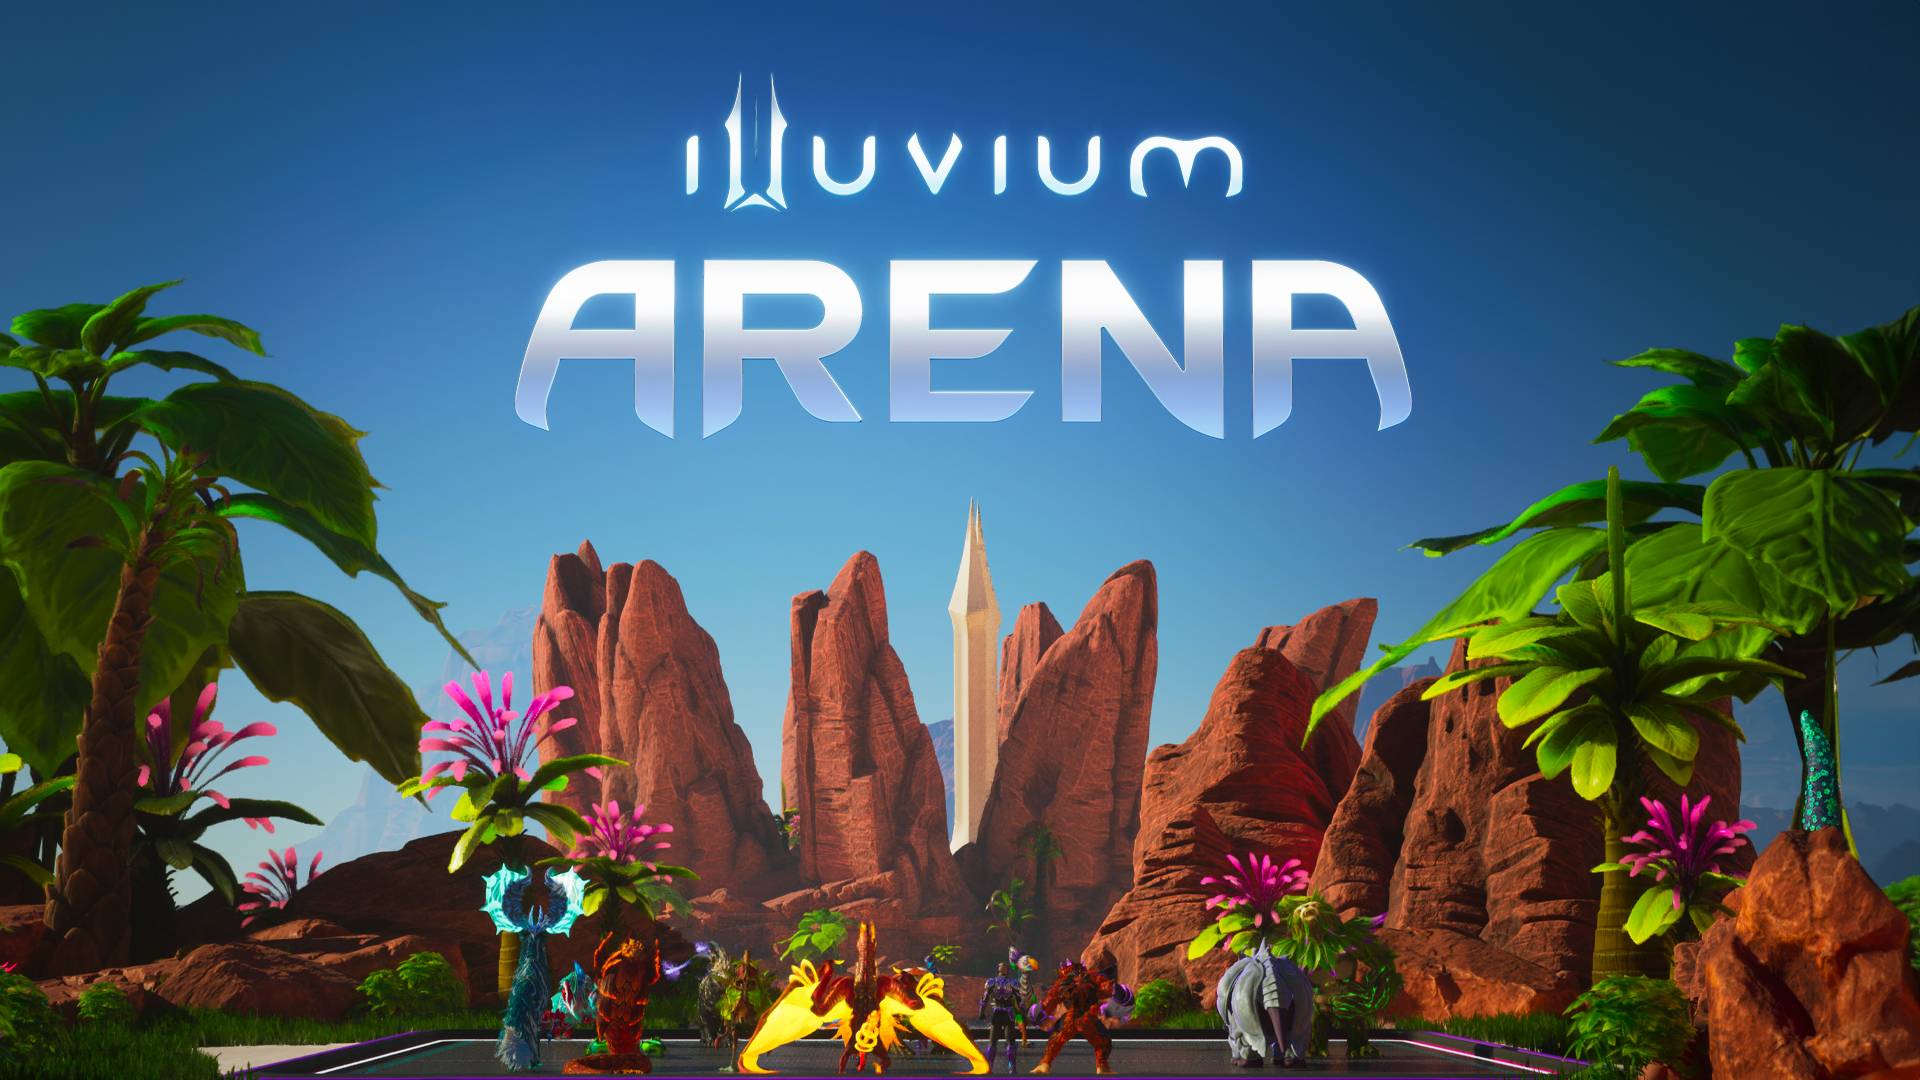 A estreia épica do Illuvium: um marco para os jogos Blockchain!